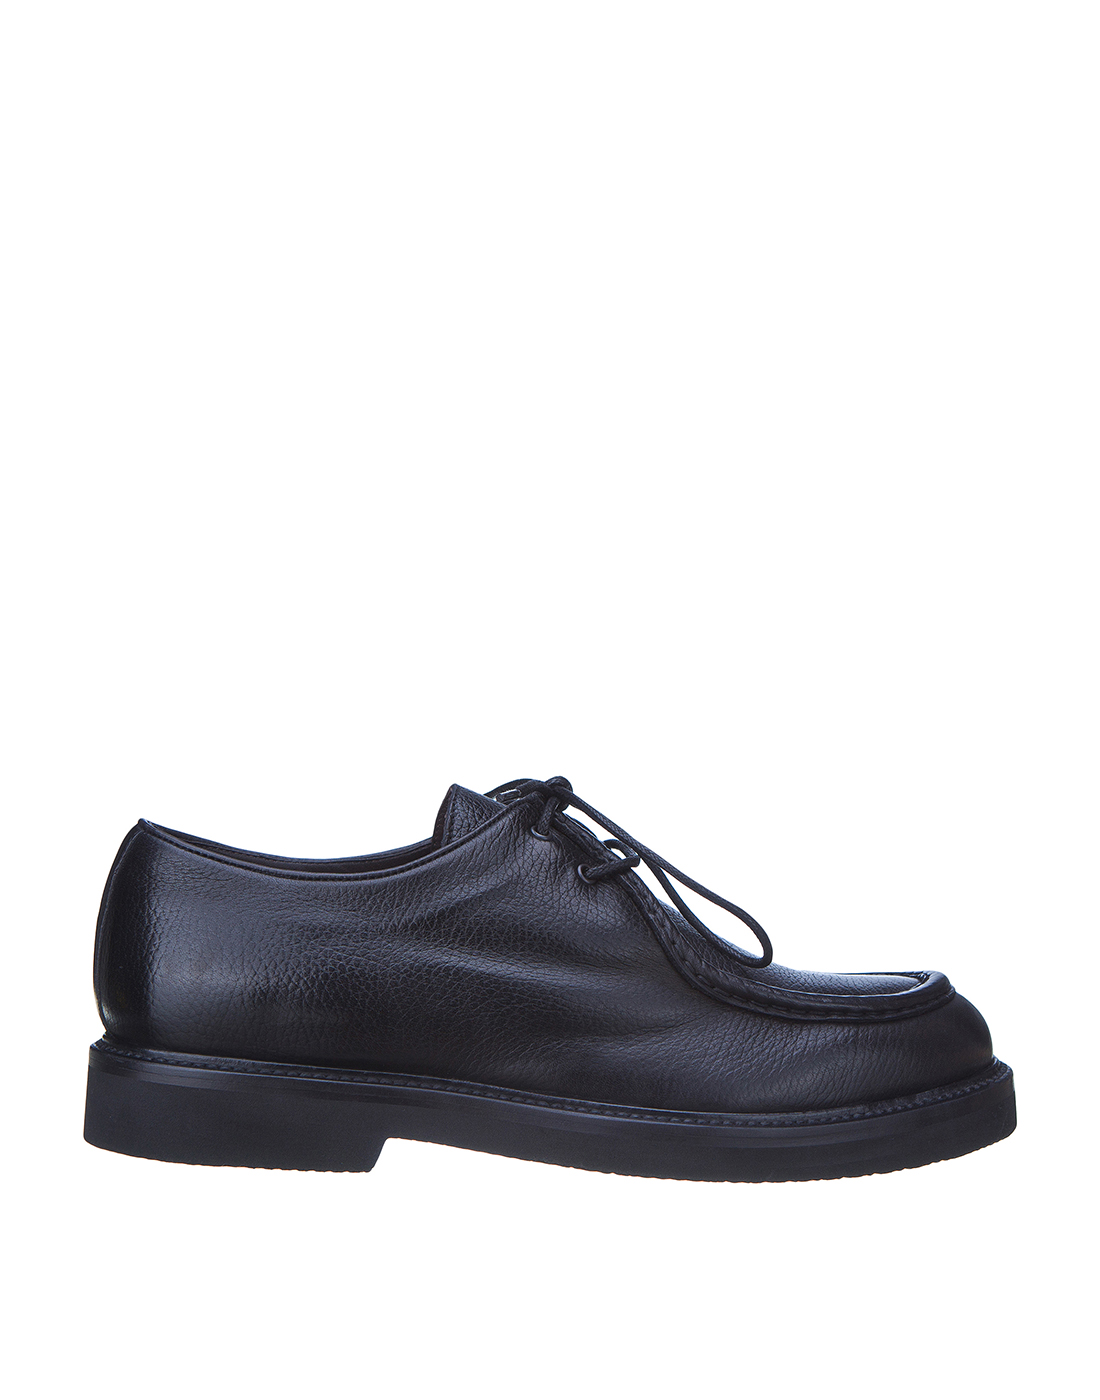 Туфли черные мужские Brecos S9141 BLACK-1